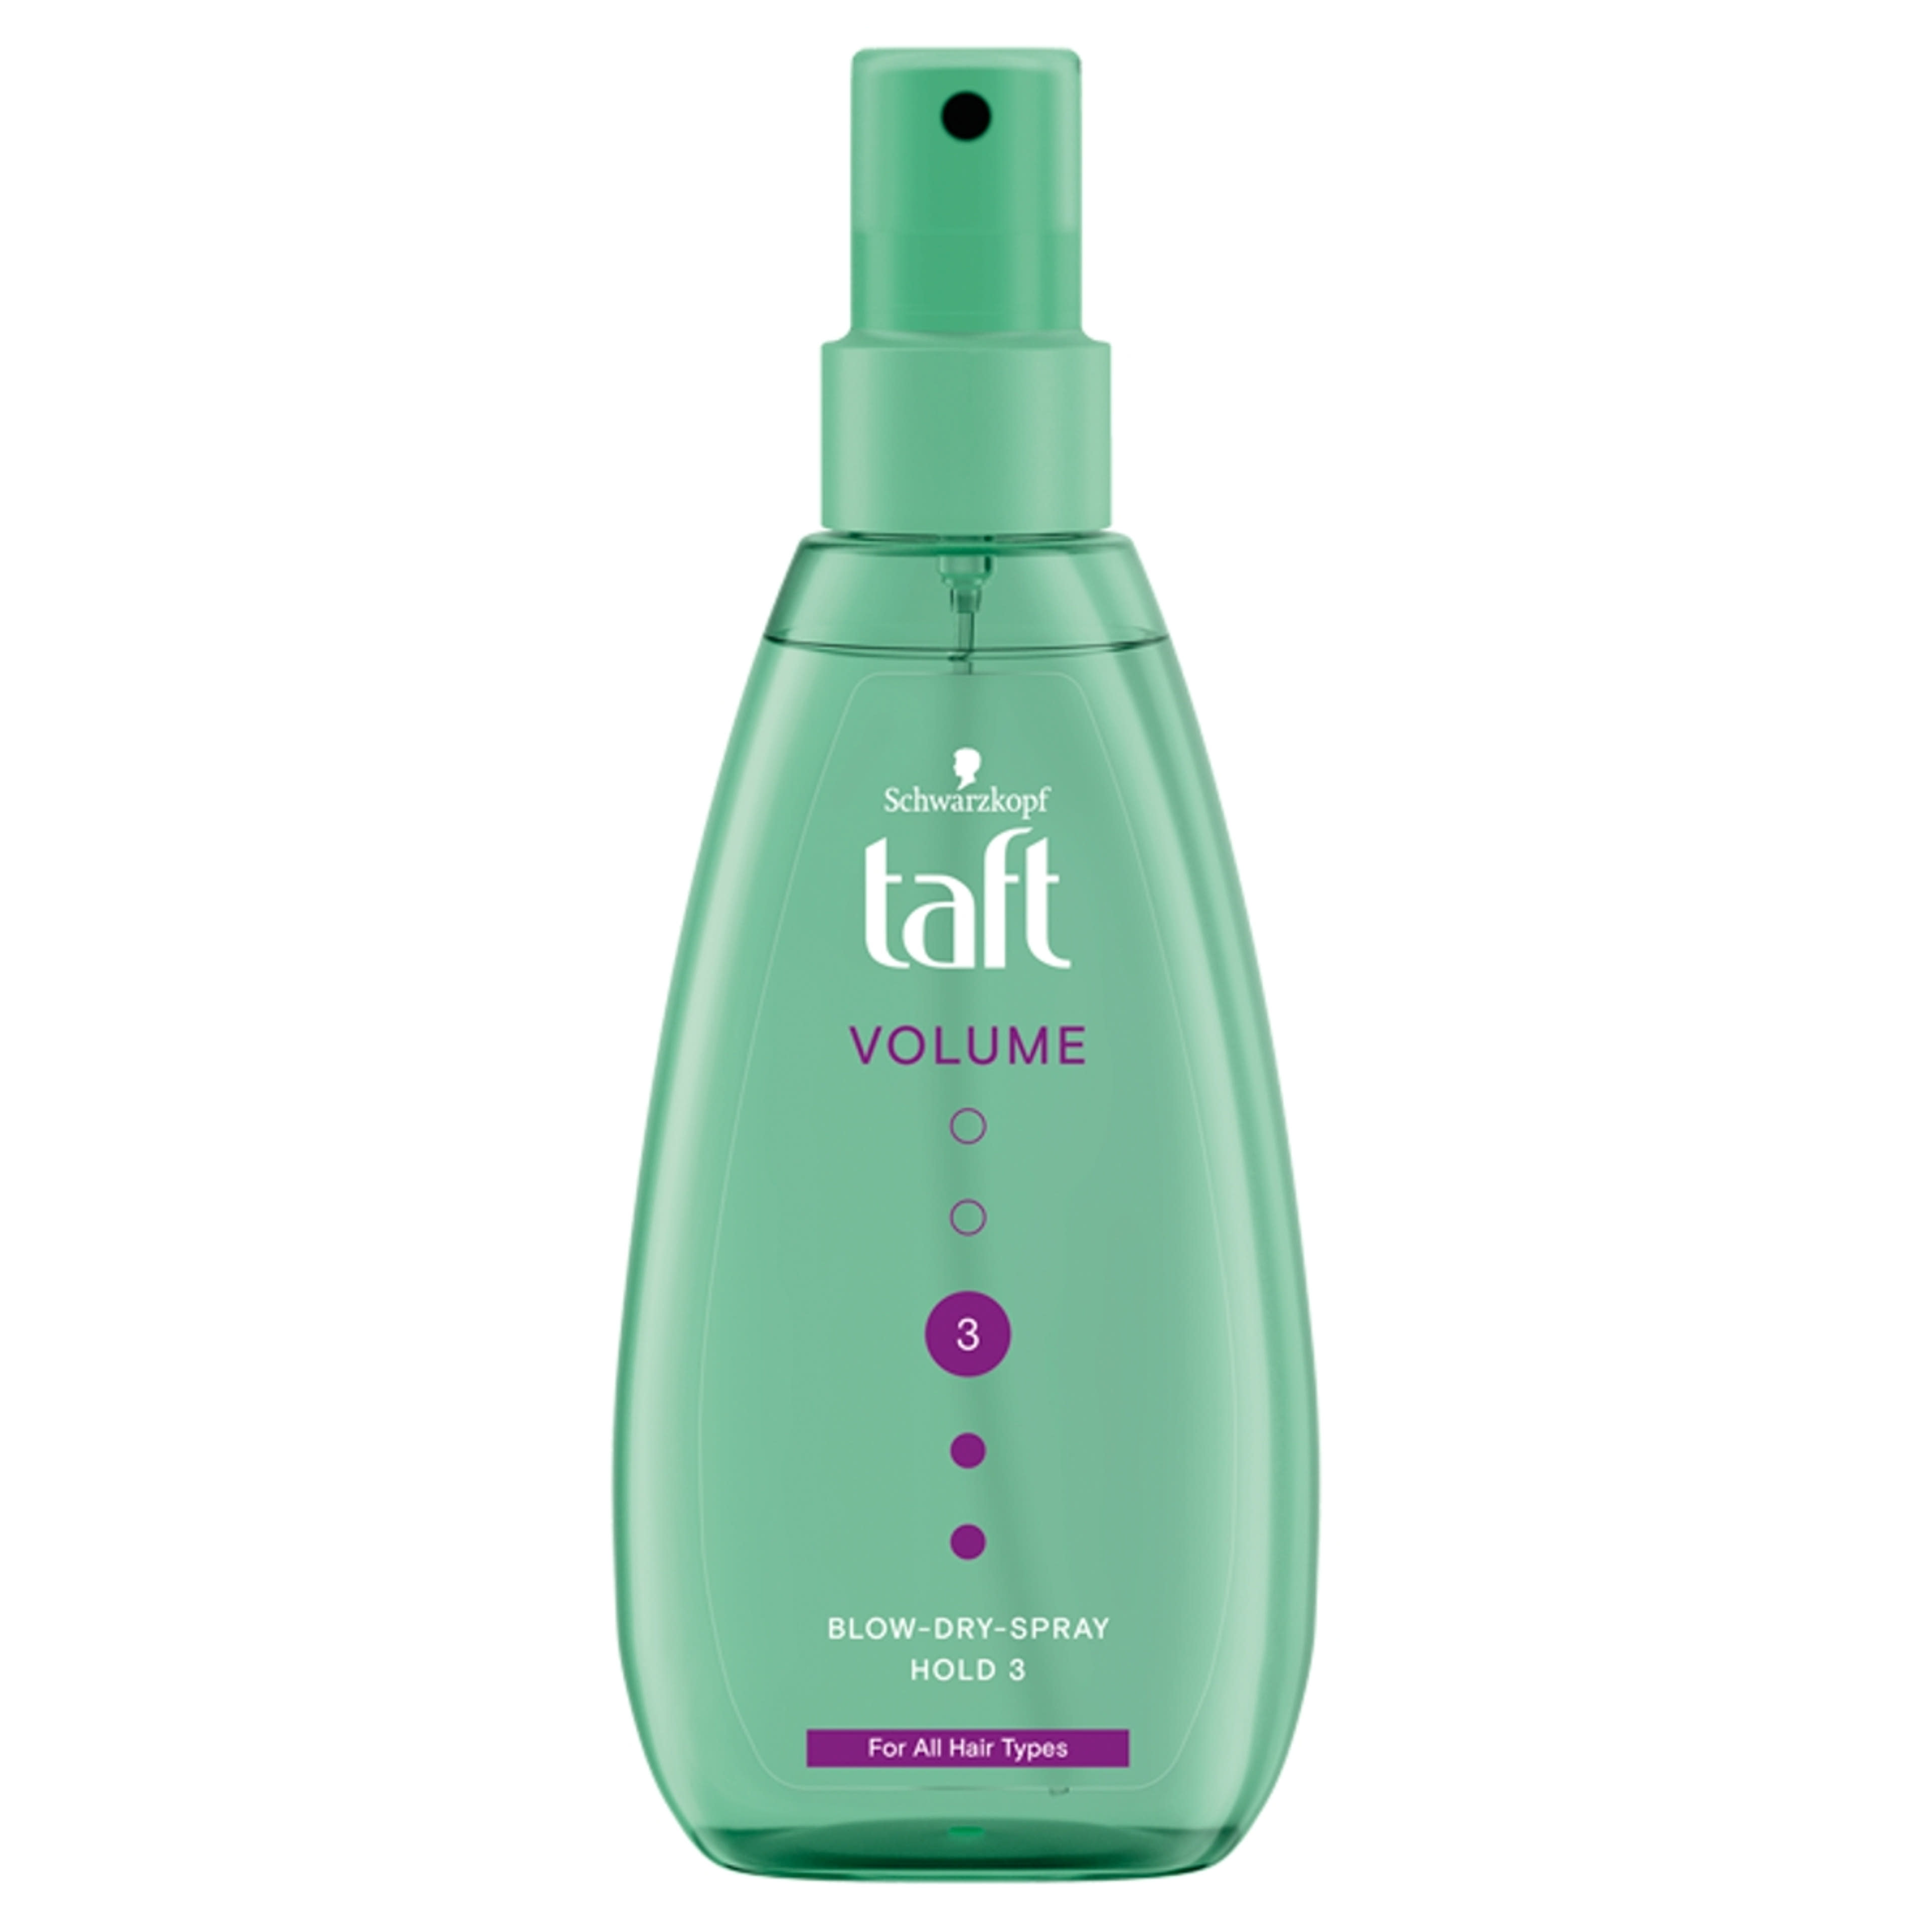 Taft hajformázó spray volumen hajszárítás előtt - 150 ml